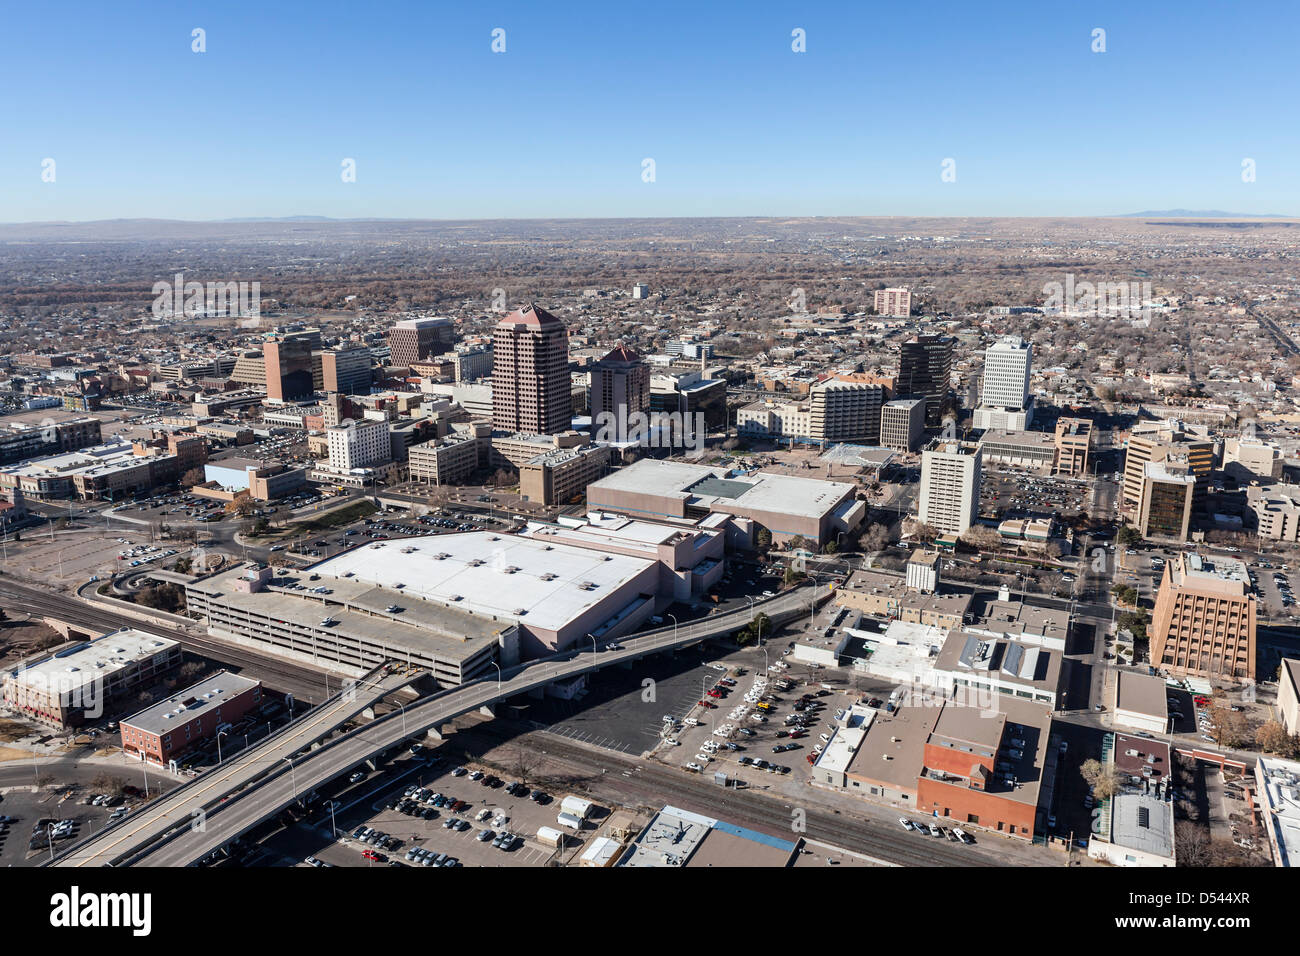 El centro de Albuquerque Nuevo México vista aérea. Foto de stock